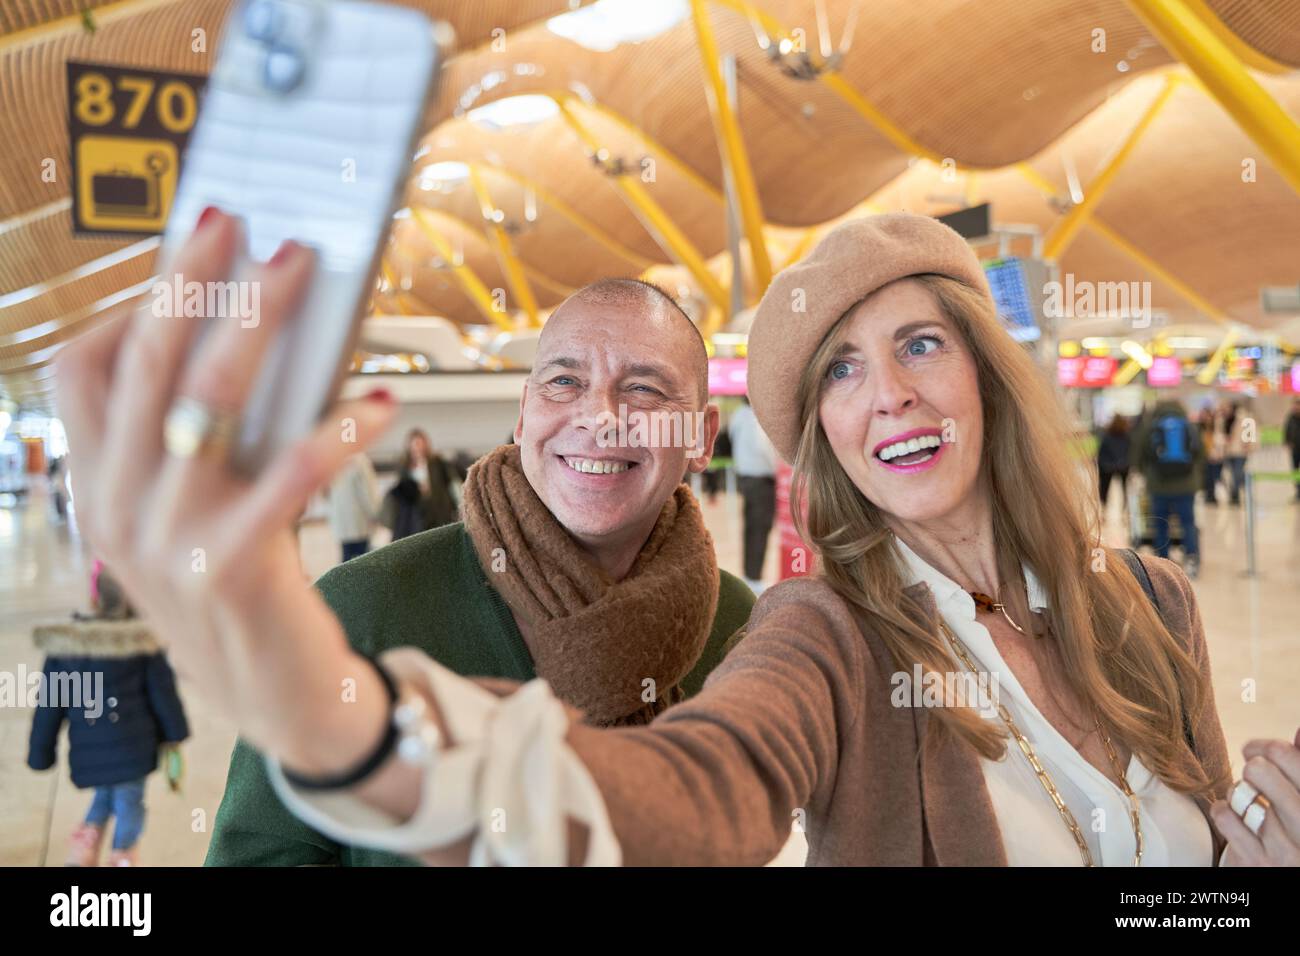 Urlaub Selfie. Wunderschönes, liebevolles Paar mittleren Alters, das Selfie mit ihrem Smartphone macht, während es auf das Boarding am Flughafen wartet. Stockfoto